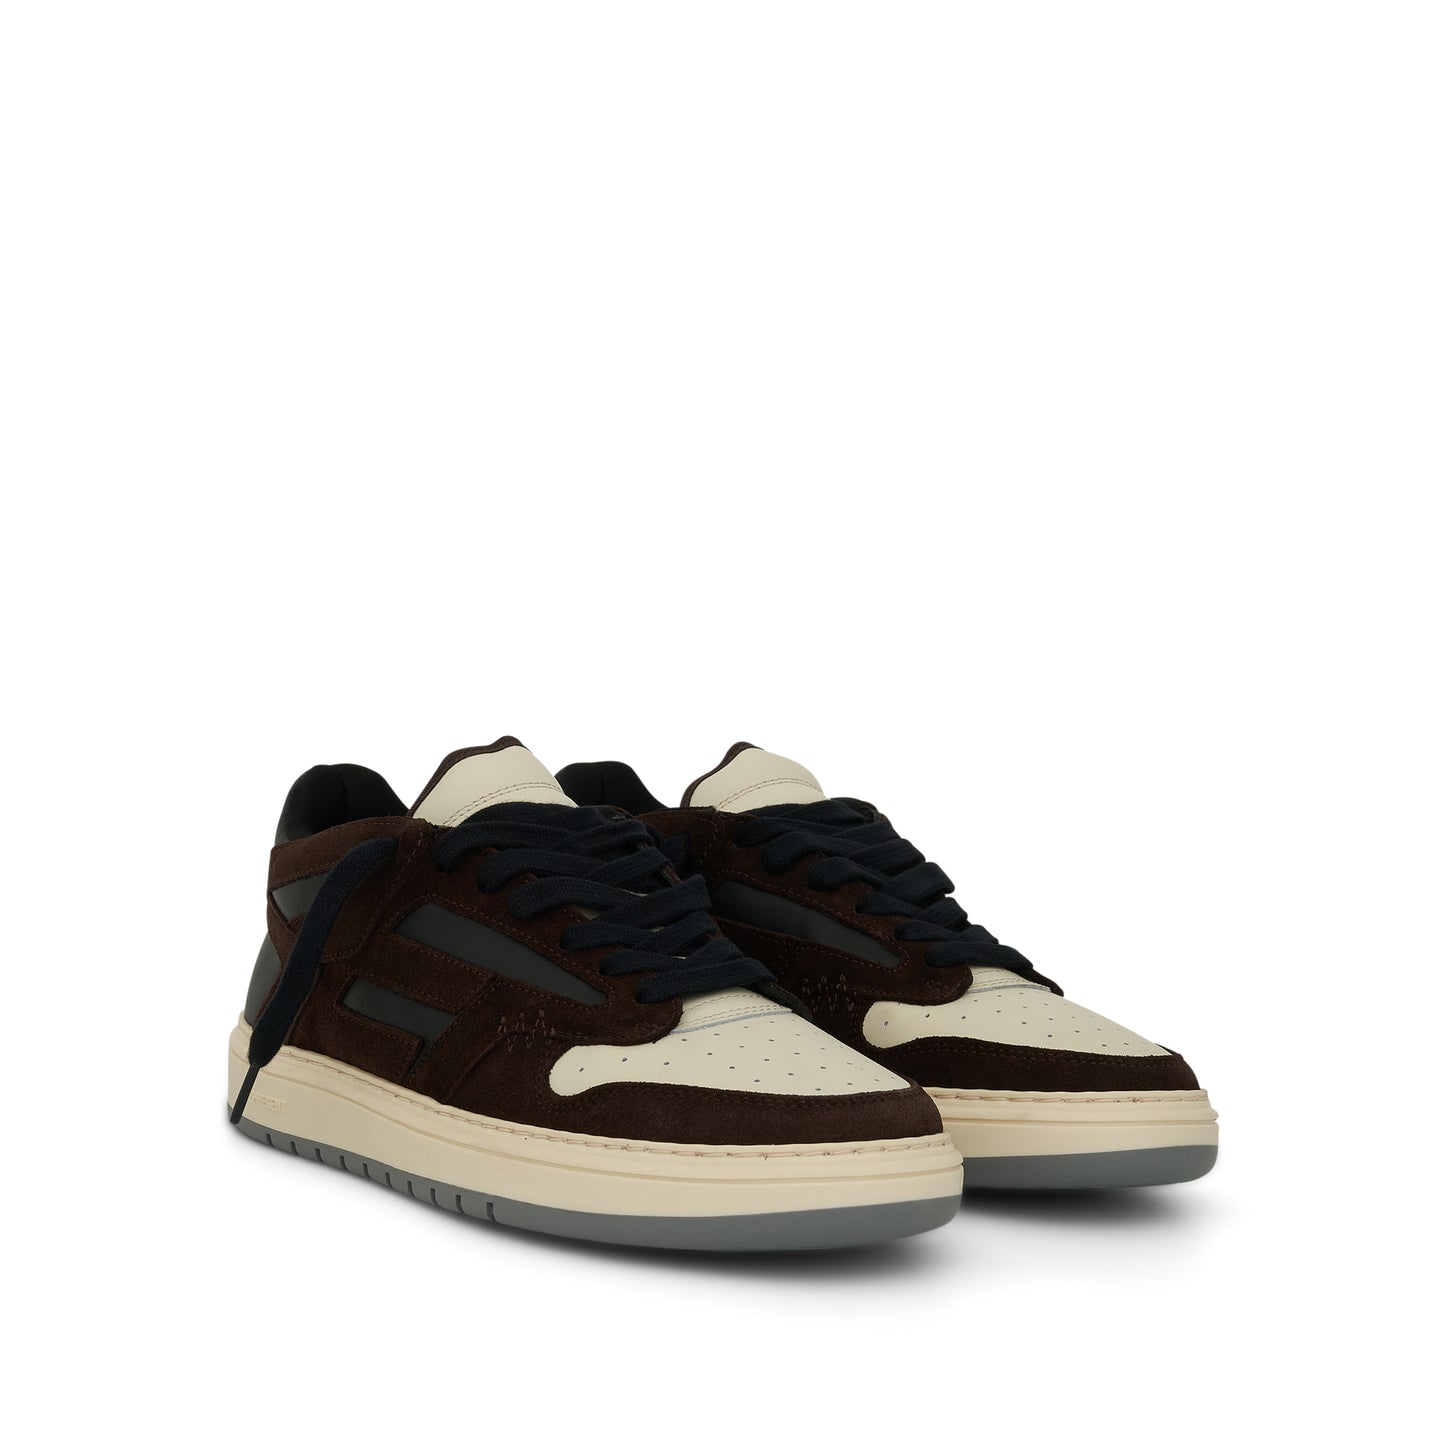 Reptor Low Sneaker in Brown/Black